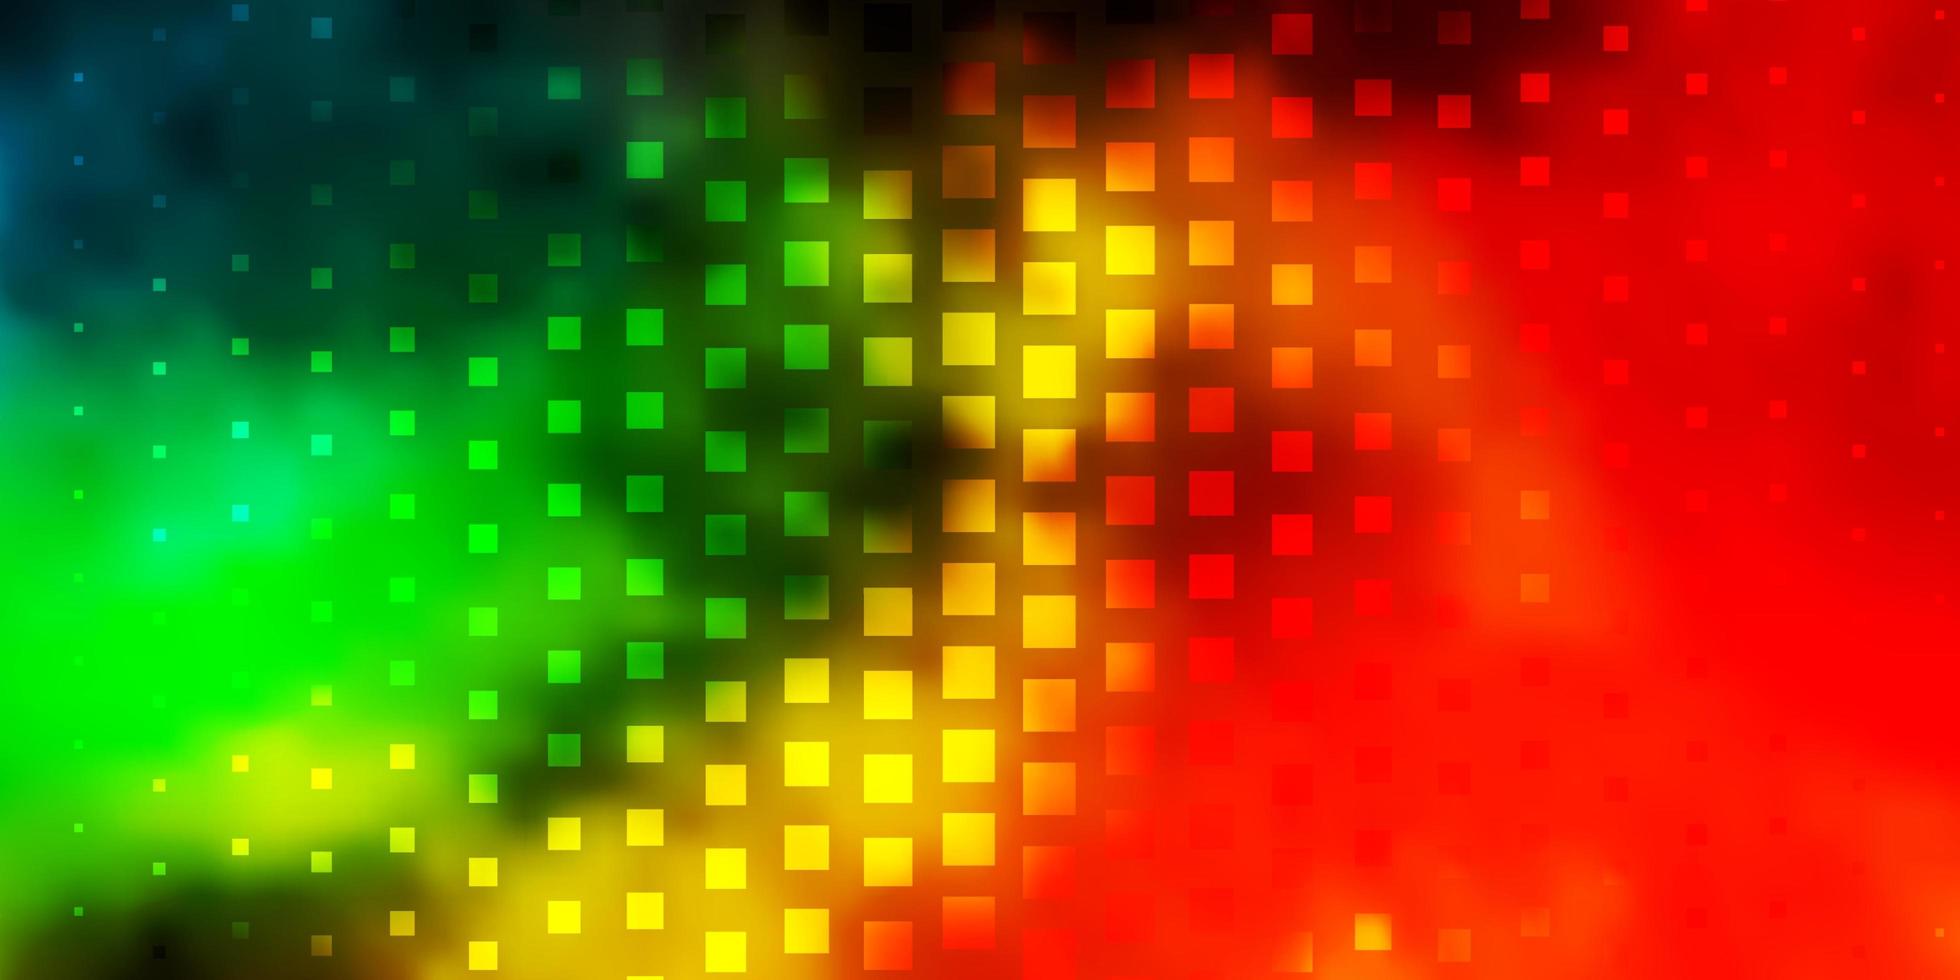 sfondo vettoriale multicolore scuro in stile poligonale.